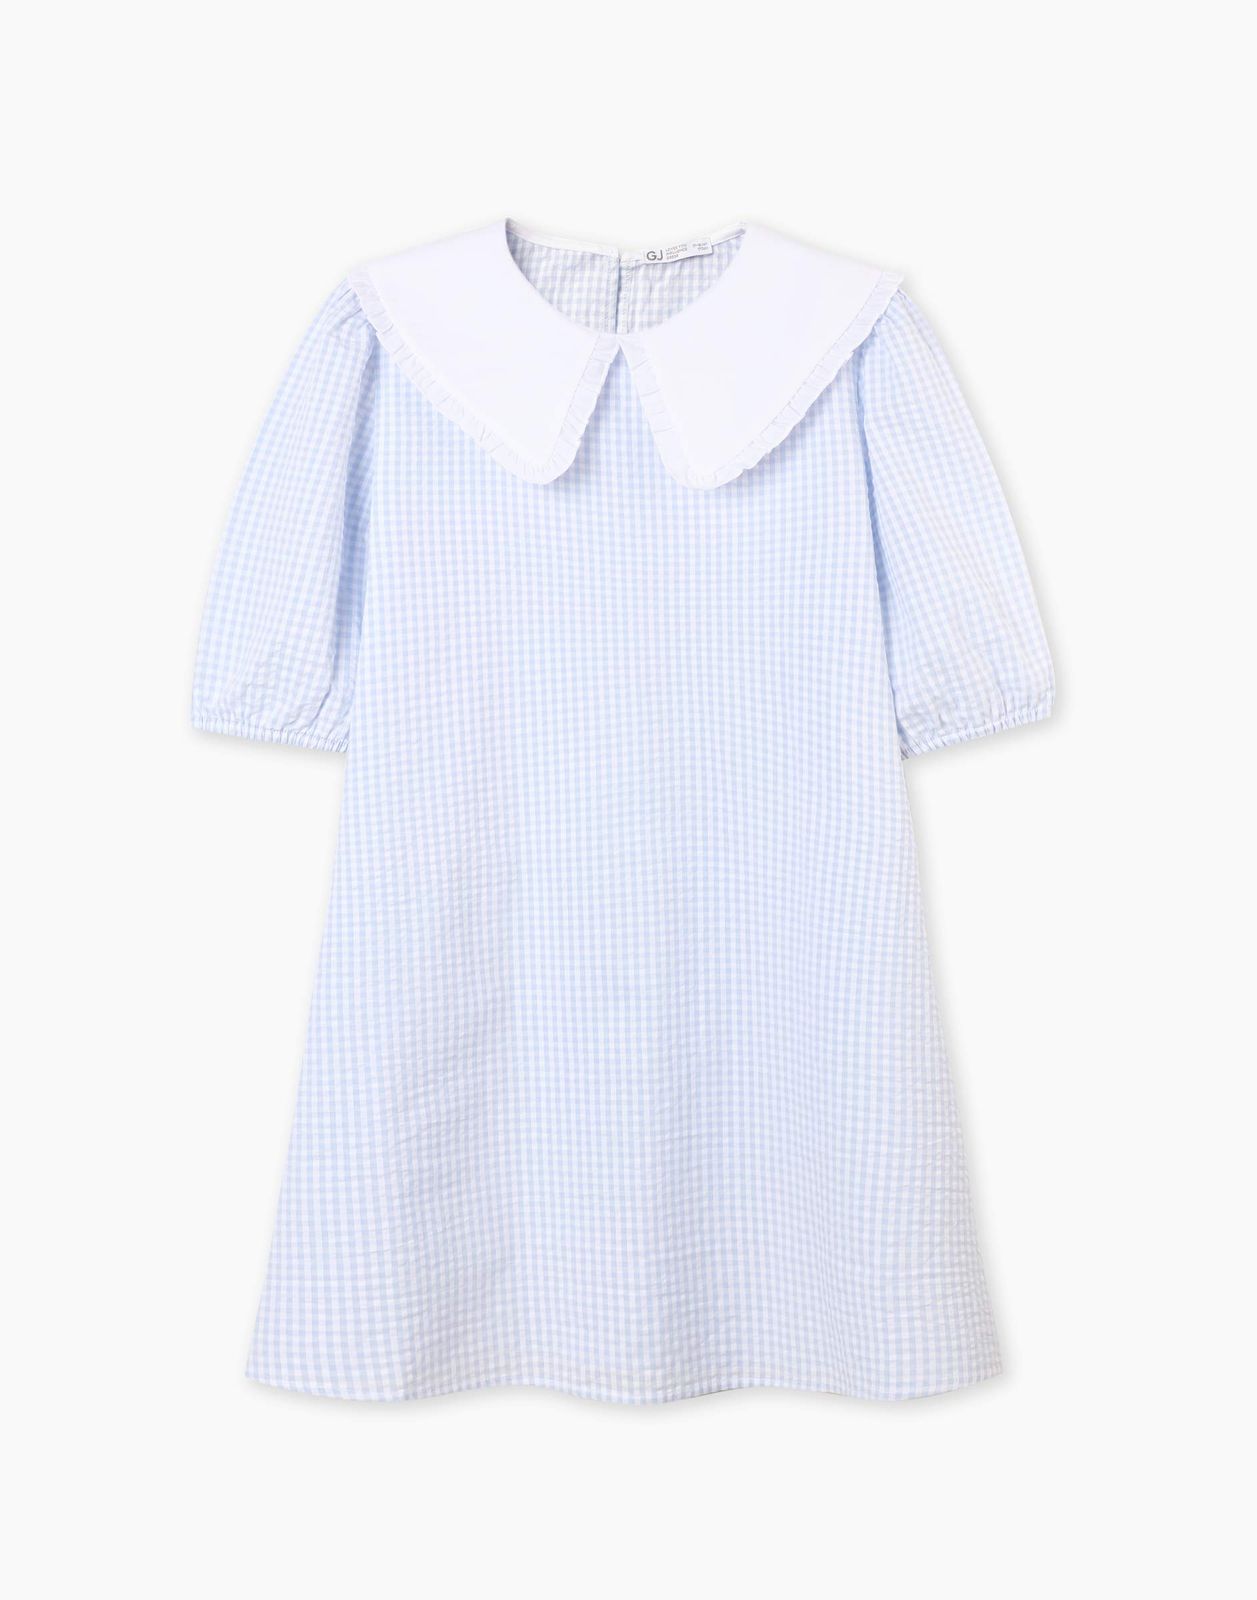 Платье детское Gloria Jeans GDR028214, голубой/белый, 158